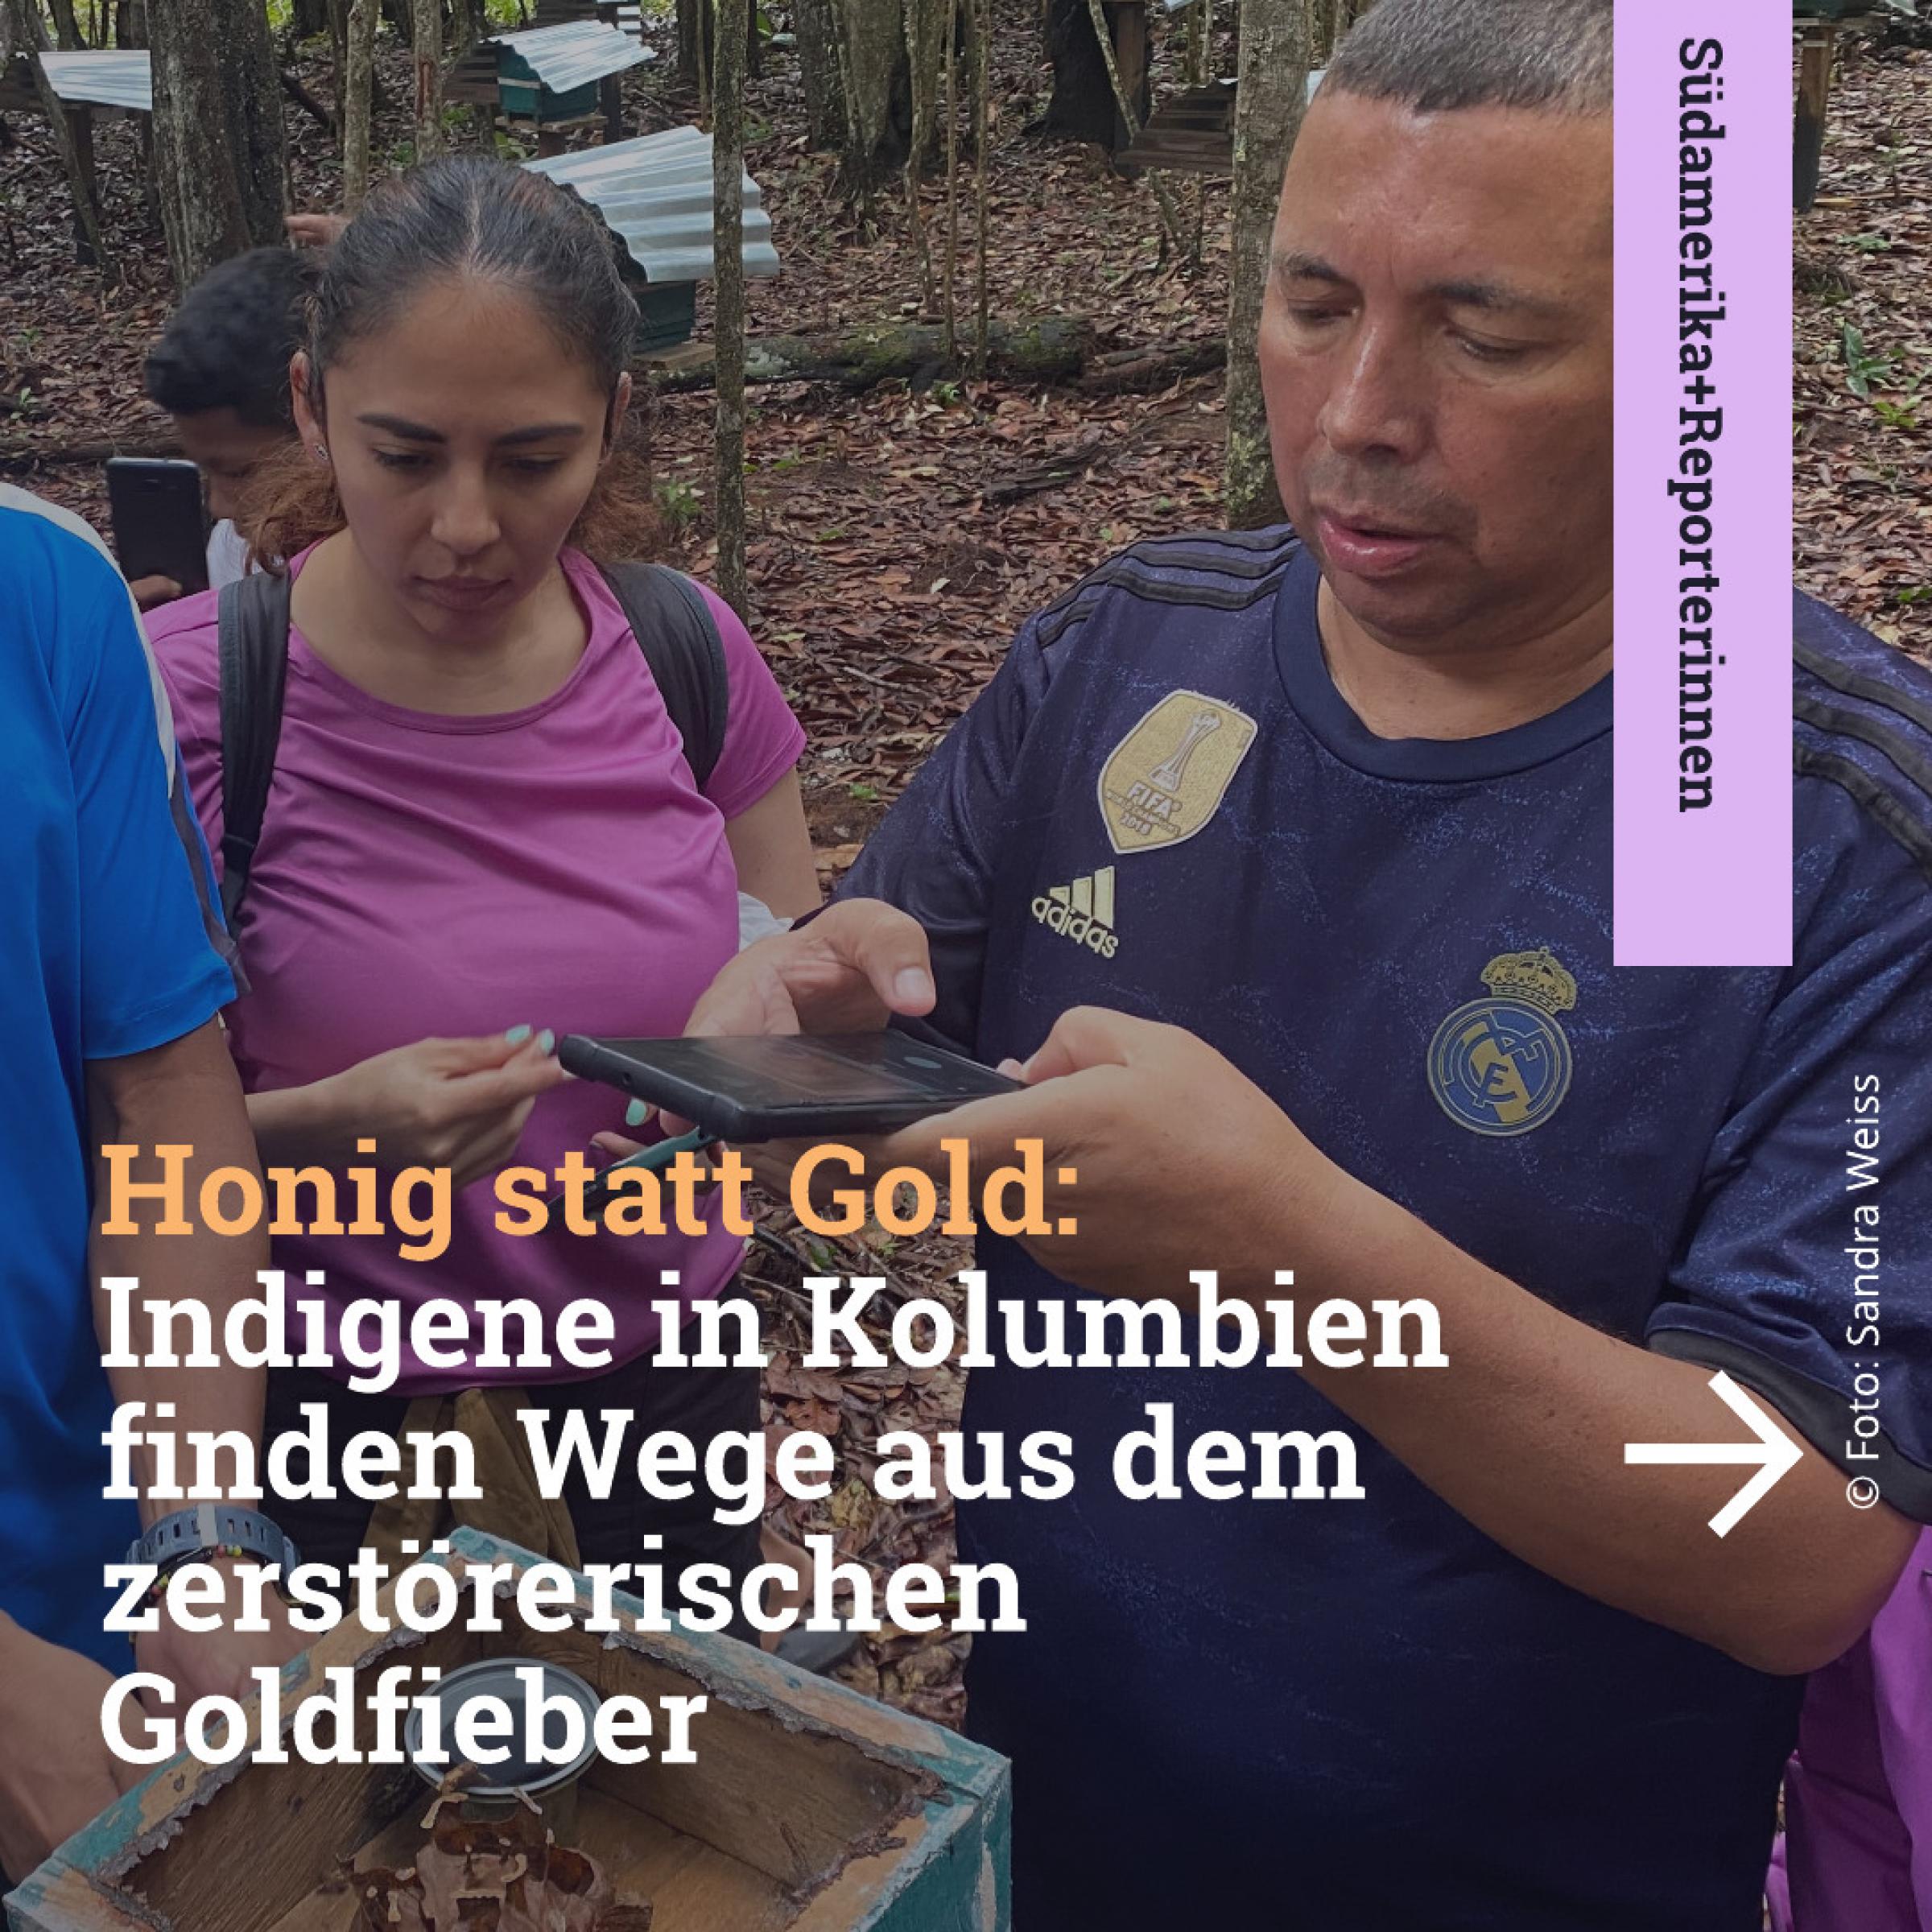 Honig statt Gold: Indigene in Kolumbien finden Wege aus dem zerstörerischen Goldfieber